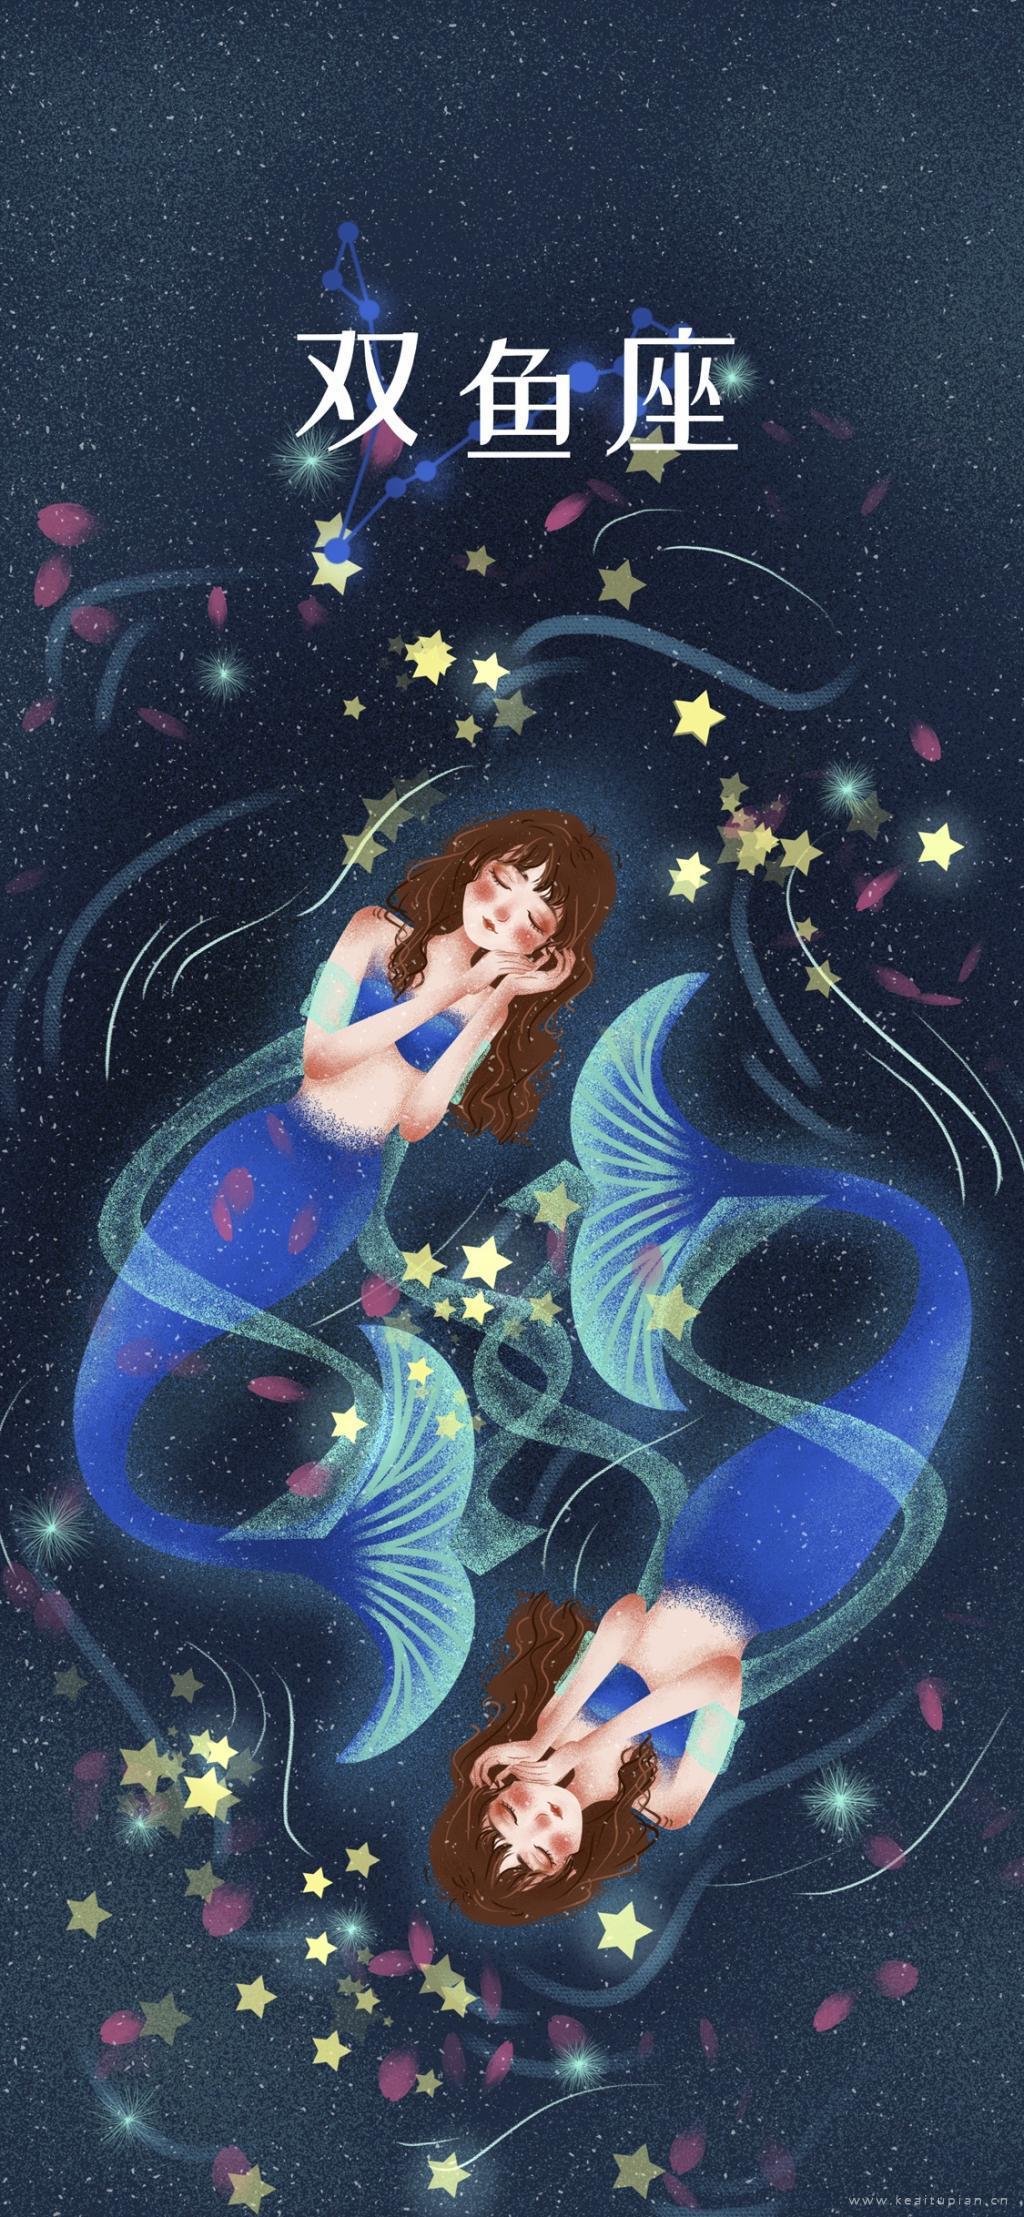 梦幻双鱼座美人鱼徜徉于梦中星空插画图片